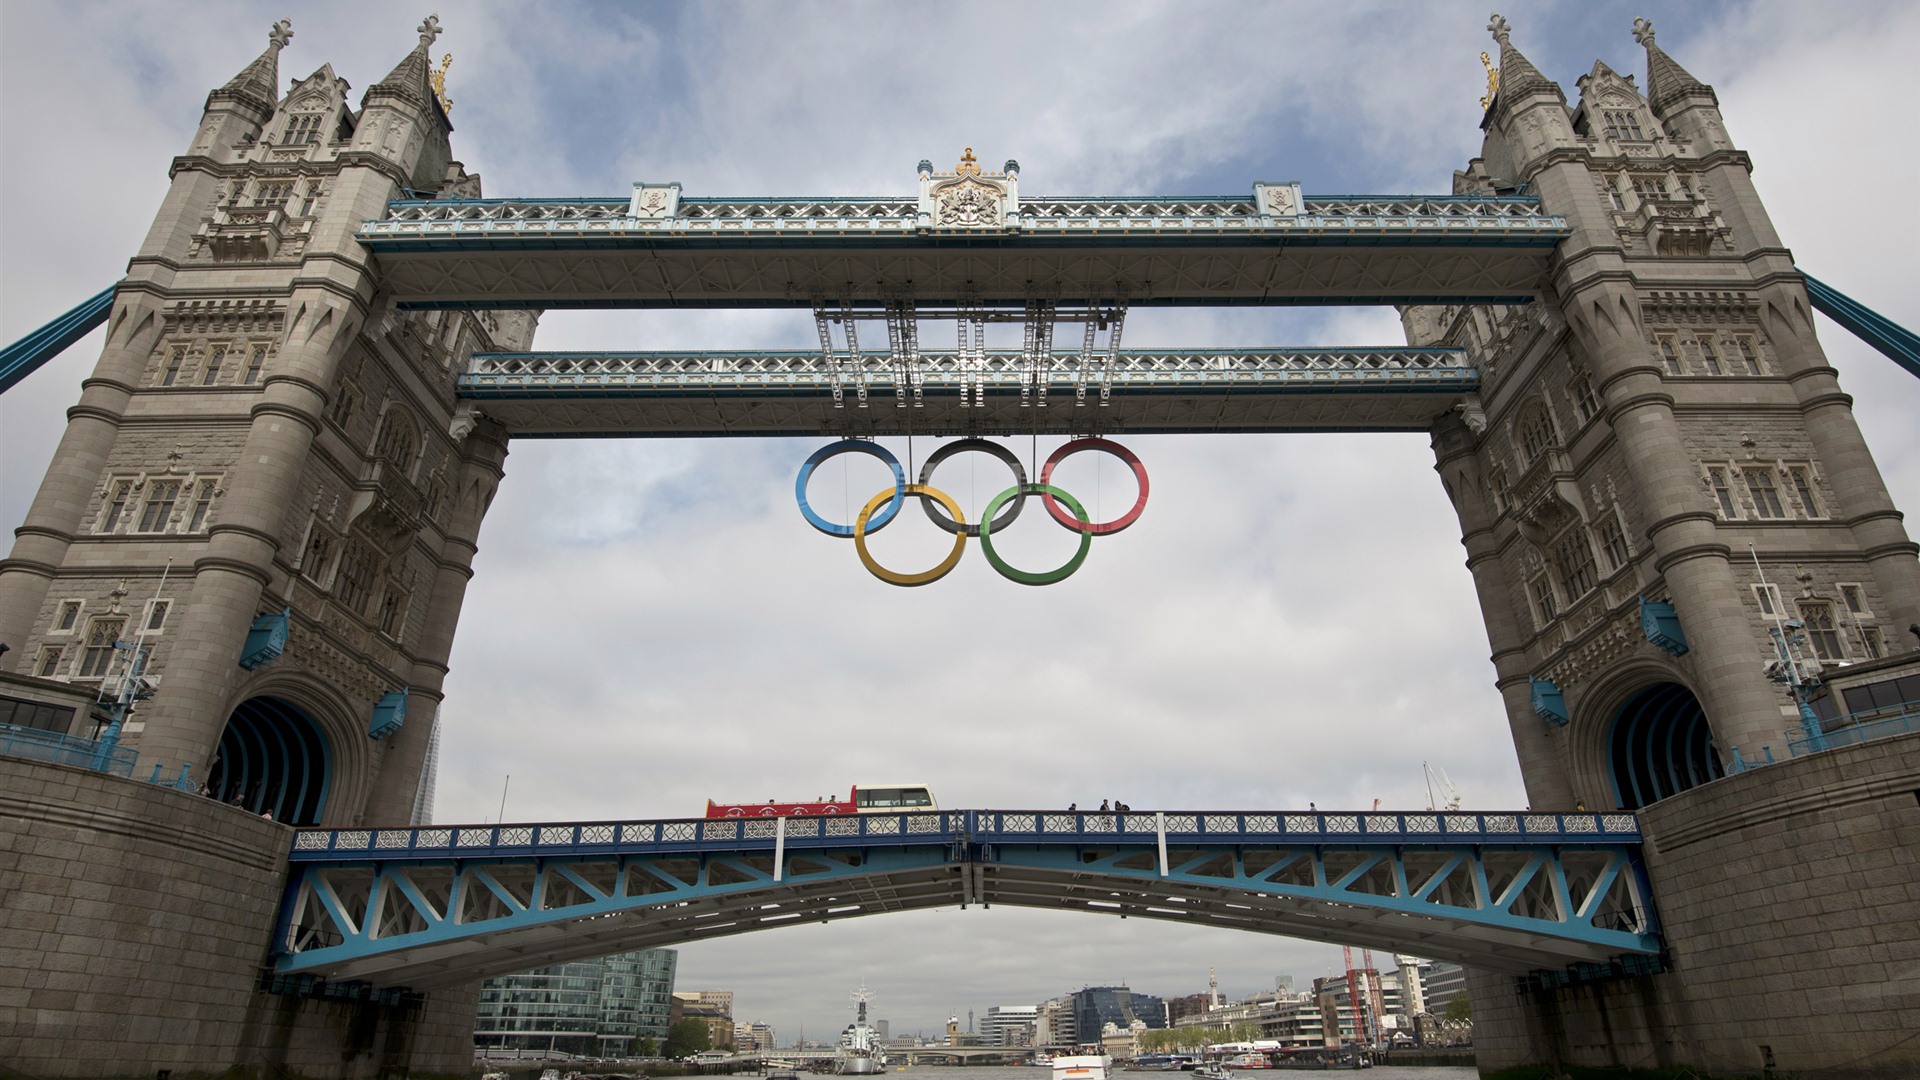 Londres 2012 Olimpiadas fondos temáticos (1) #27 - 1920x1080